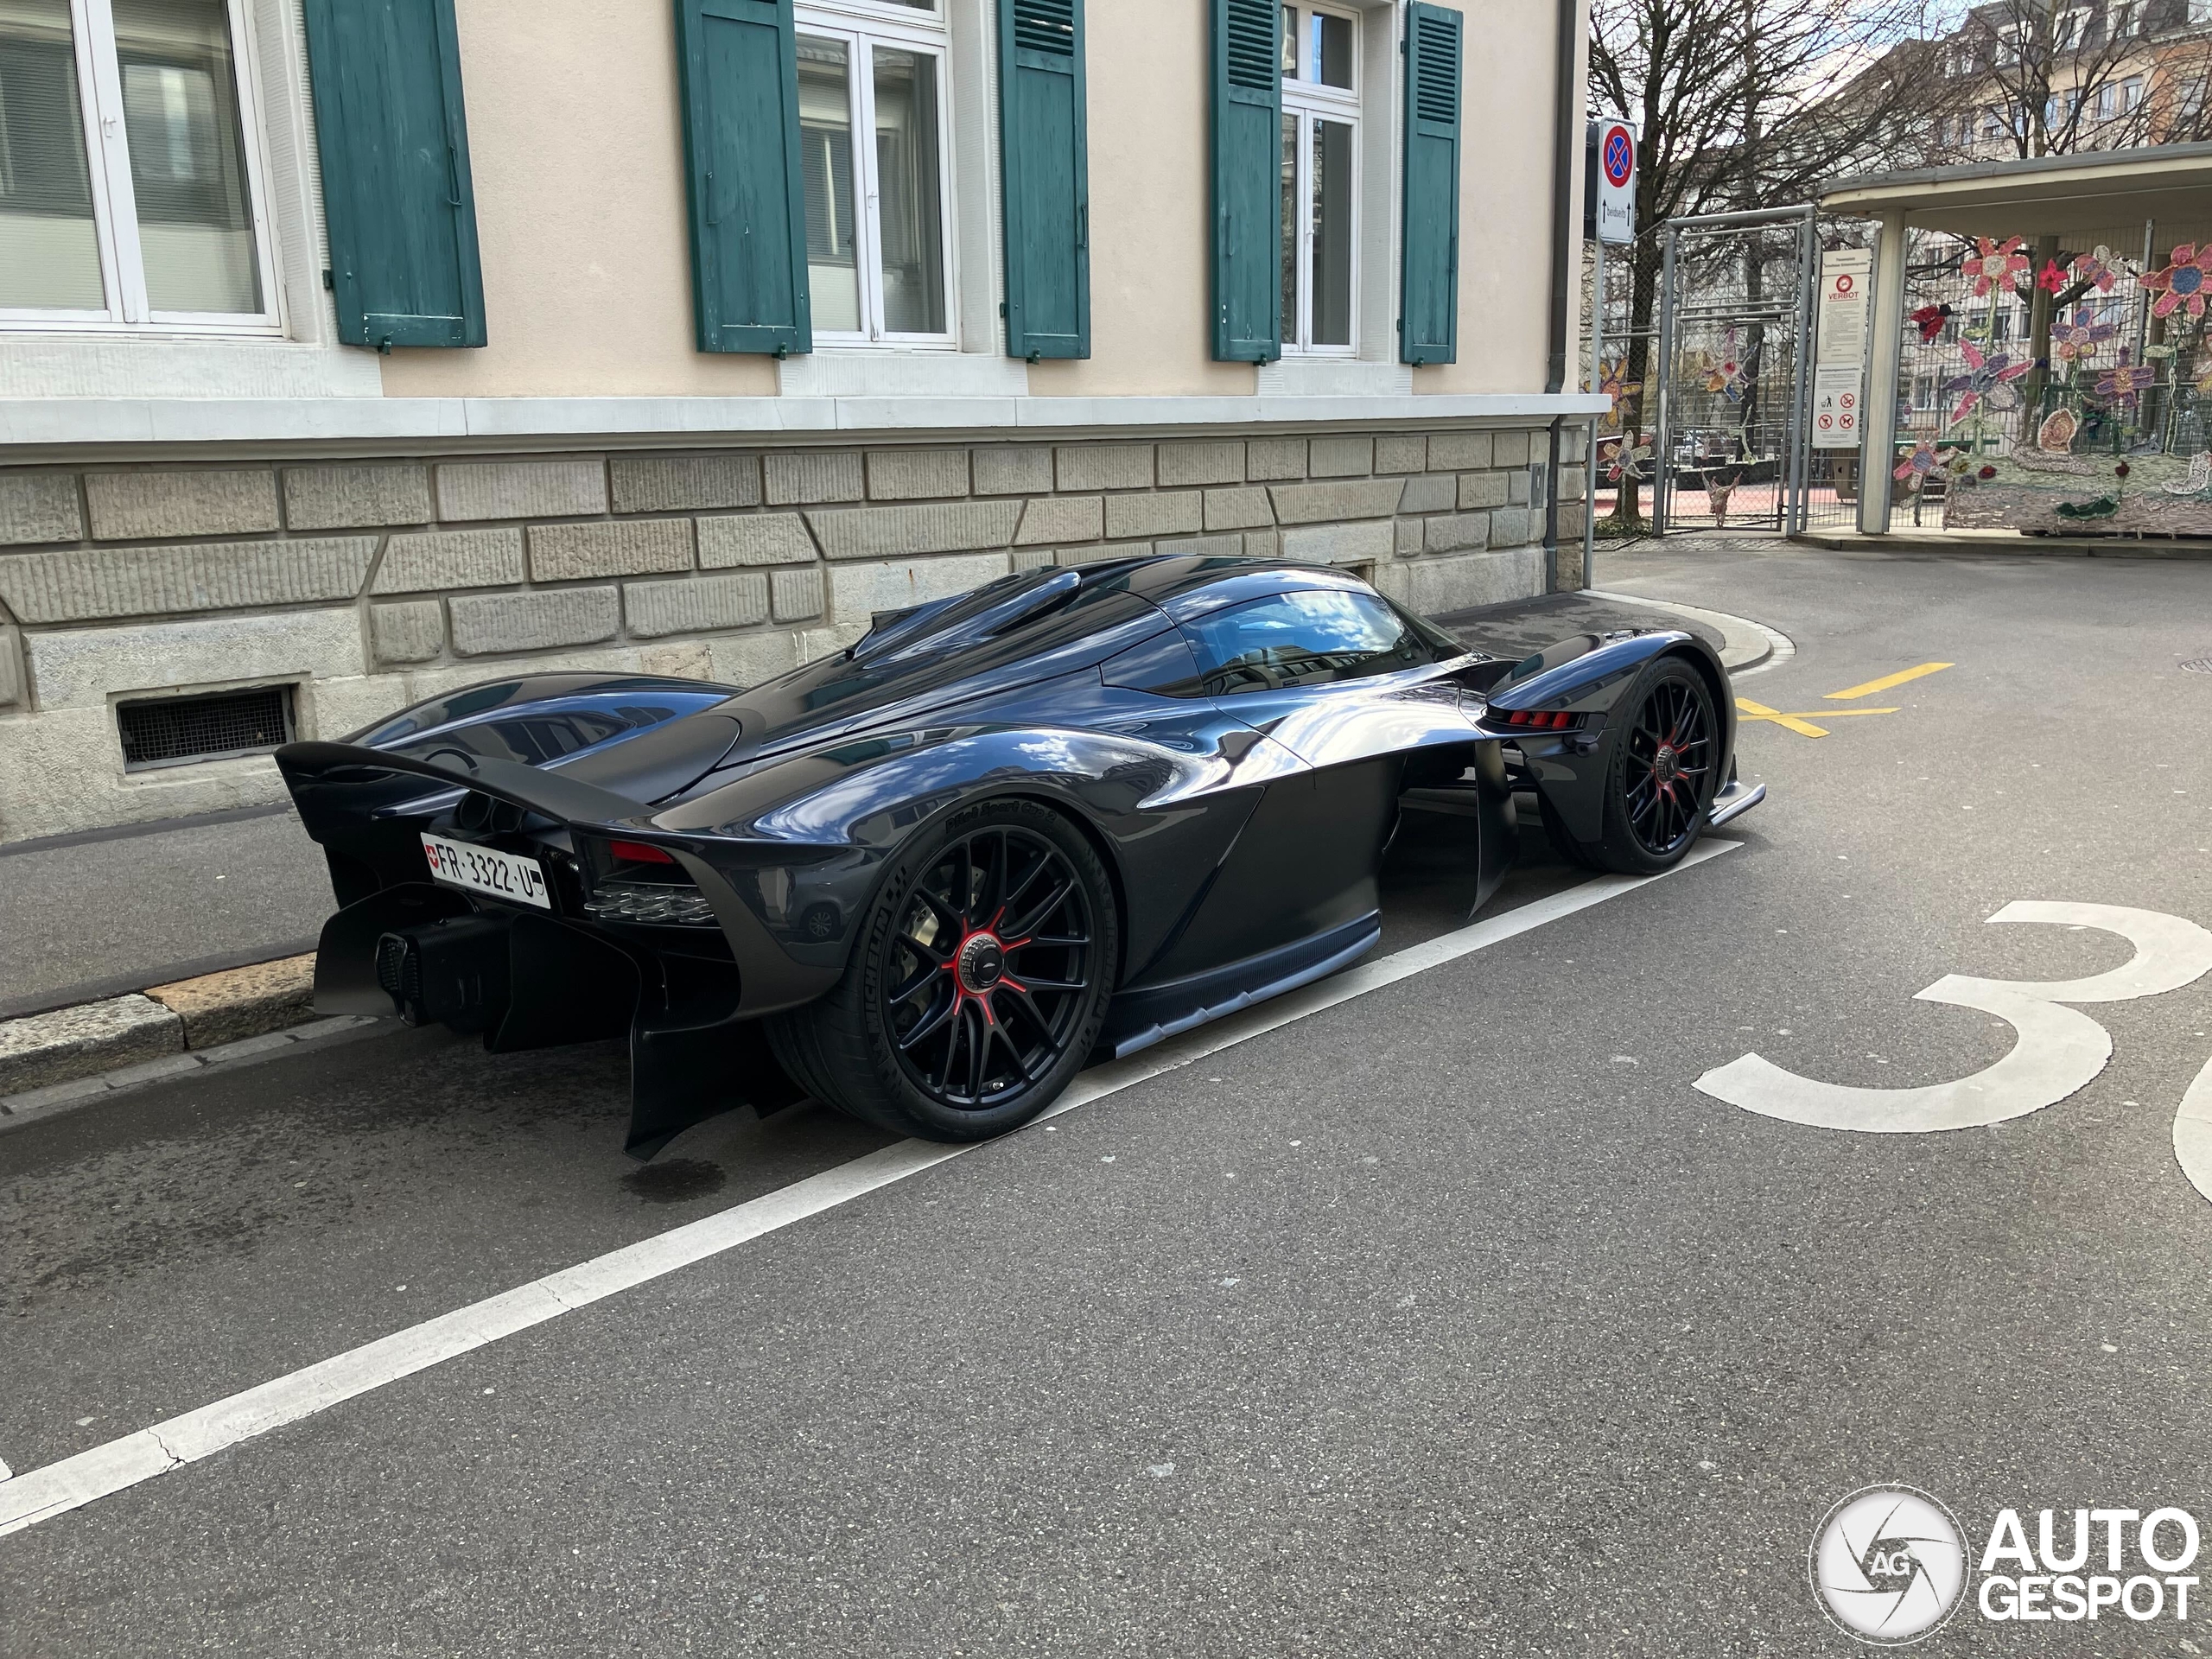 An Aston Martin Valkyrie shows up in Zurich.